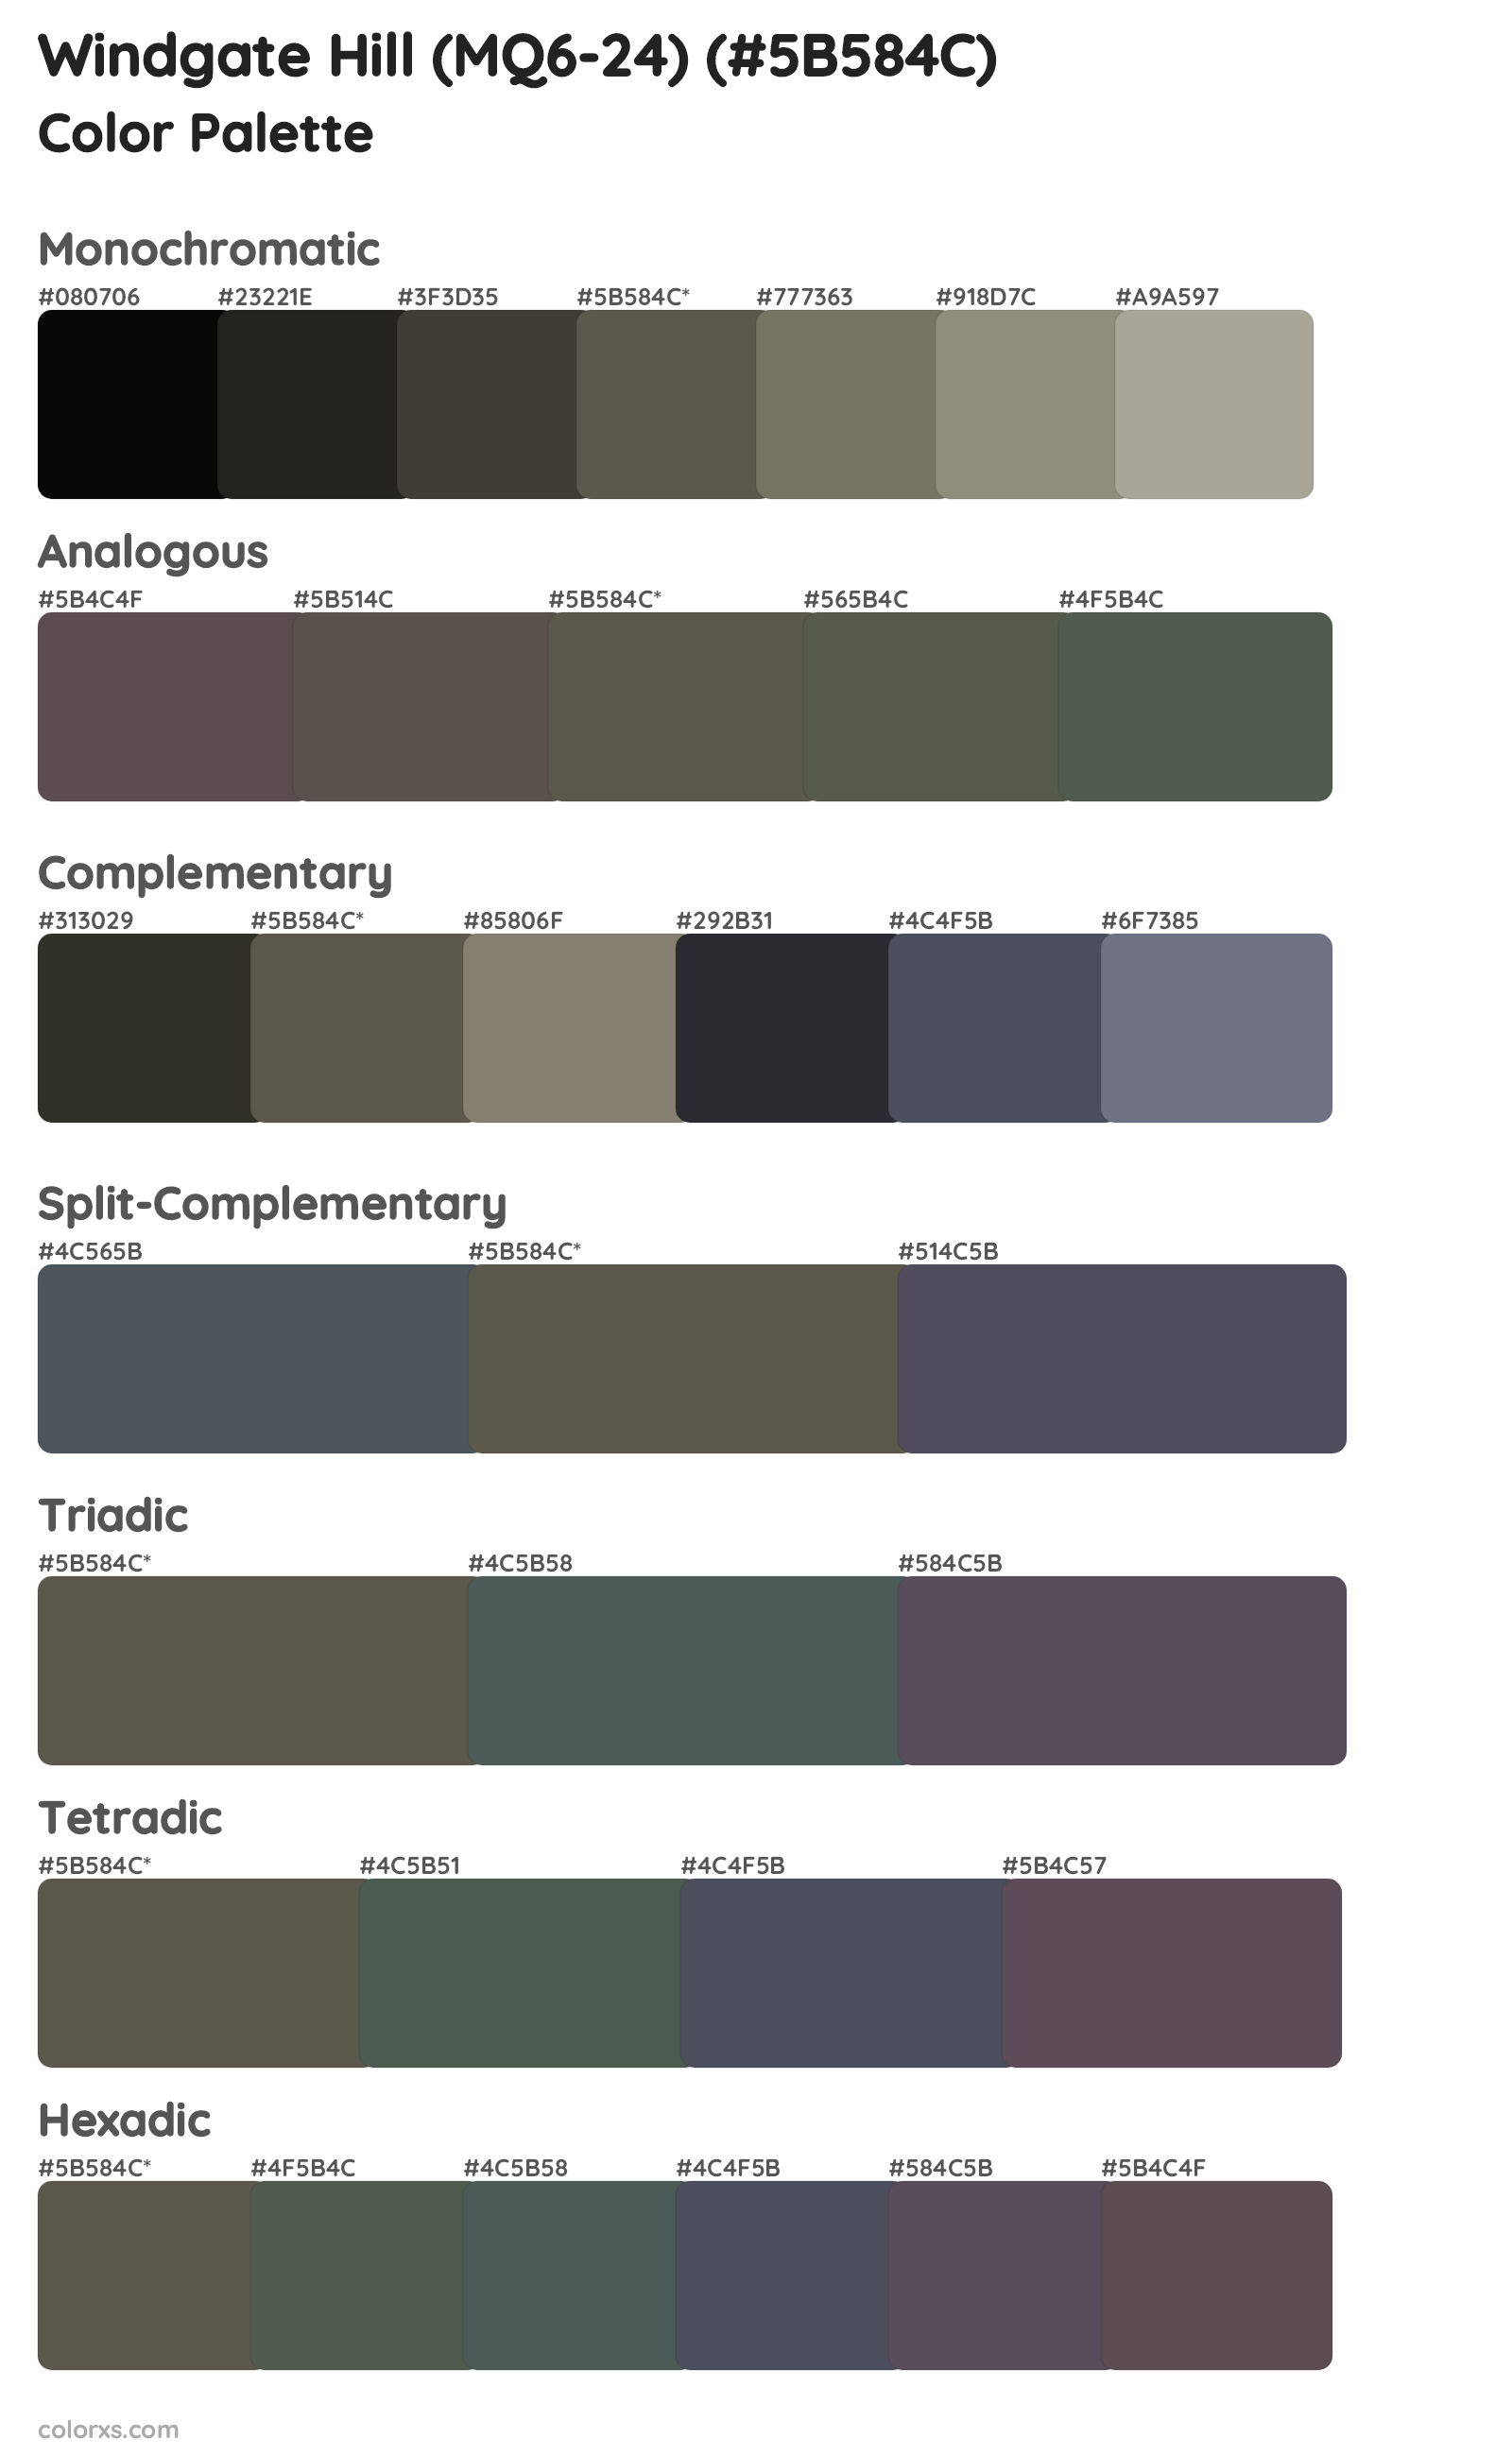 Windgate Hill (MQ6-24) Color Scheme Palettes